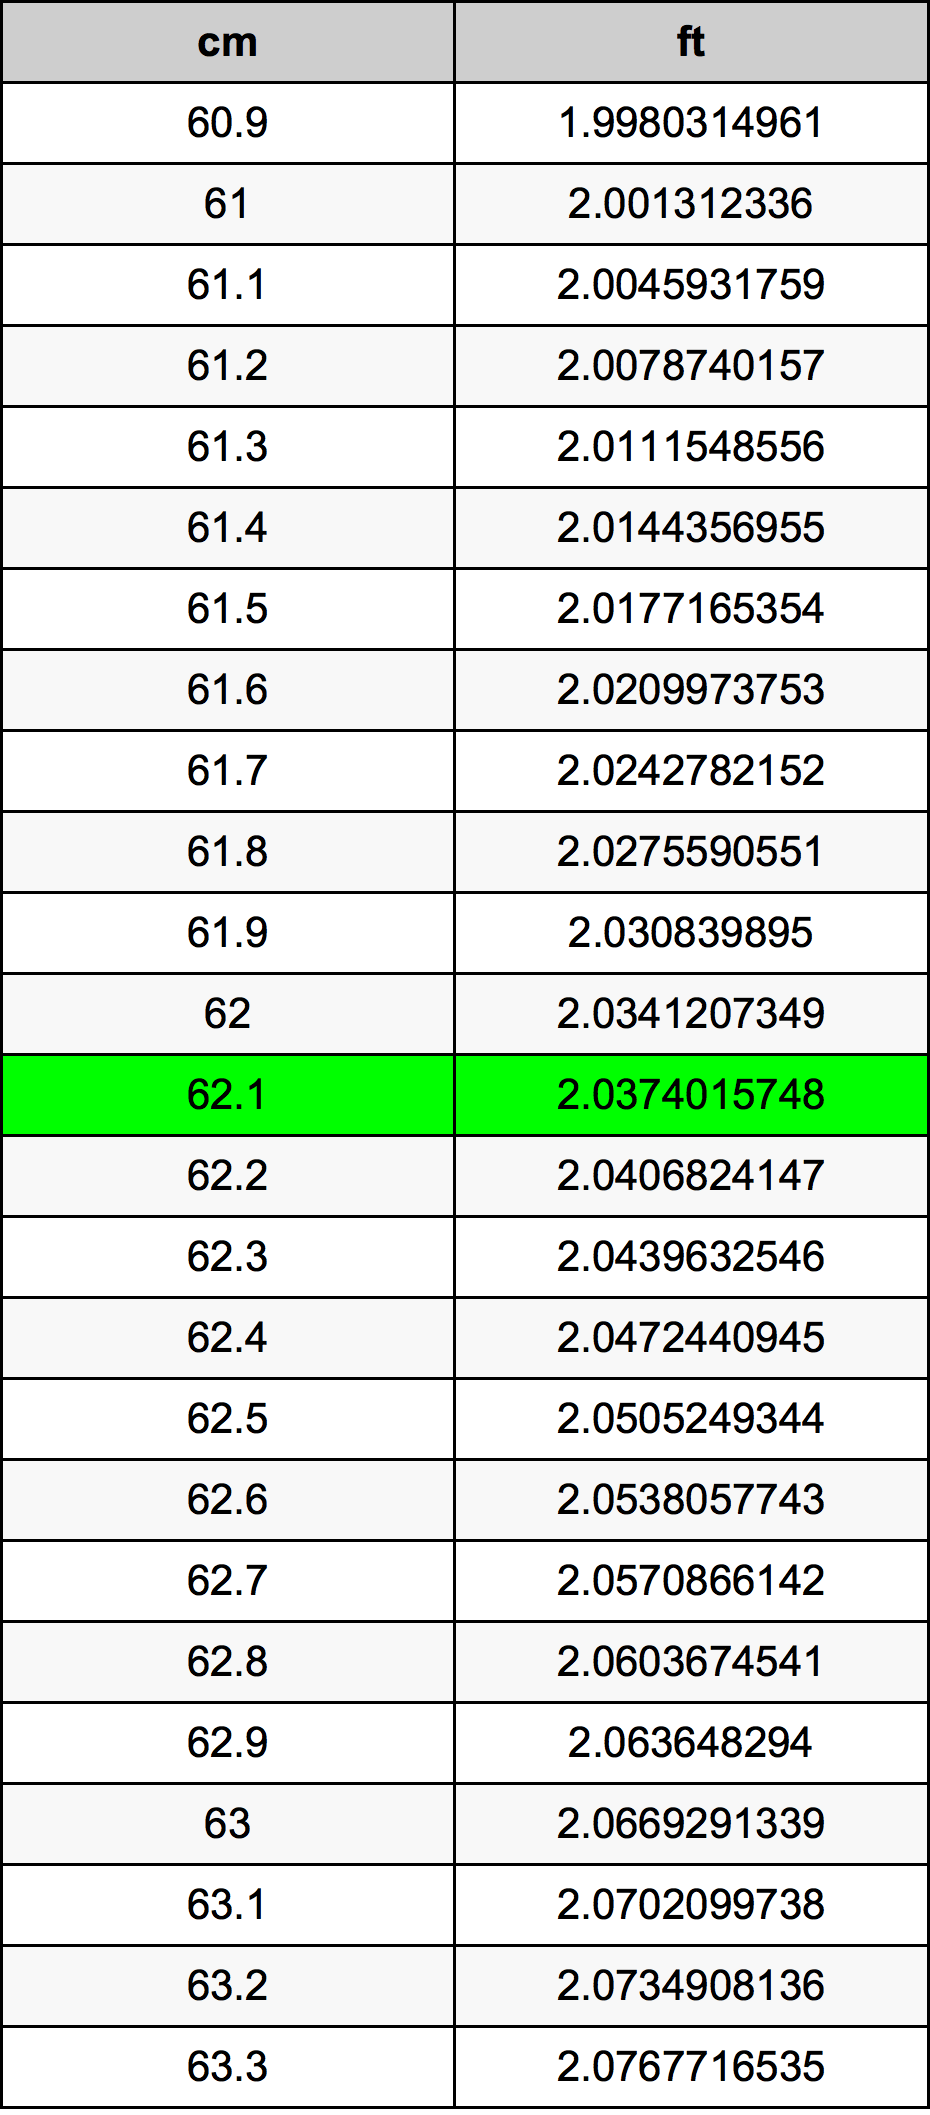 62.1 Centiméter átszámítási táblázat